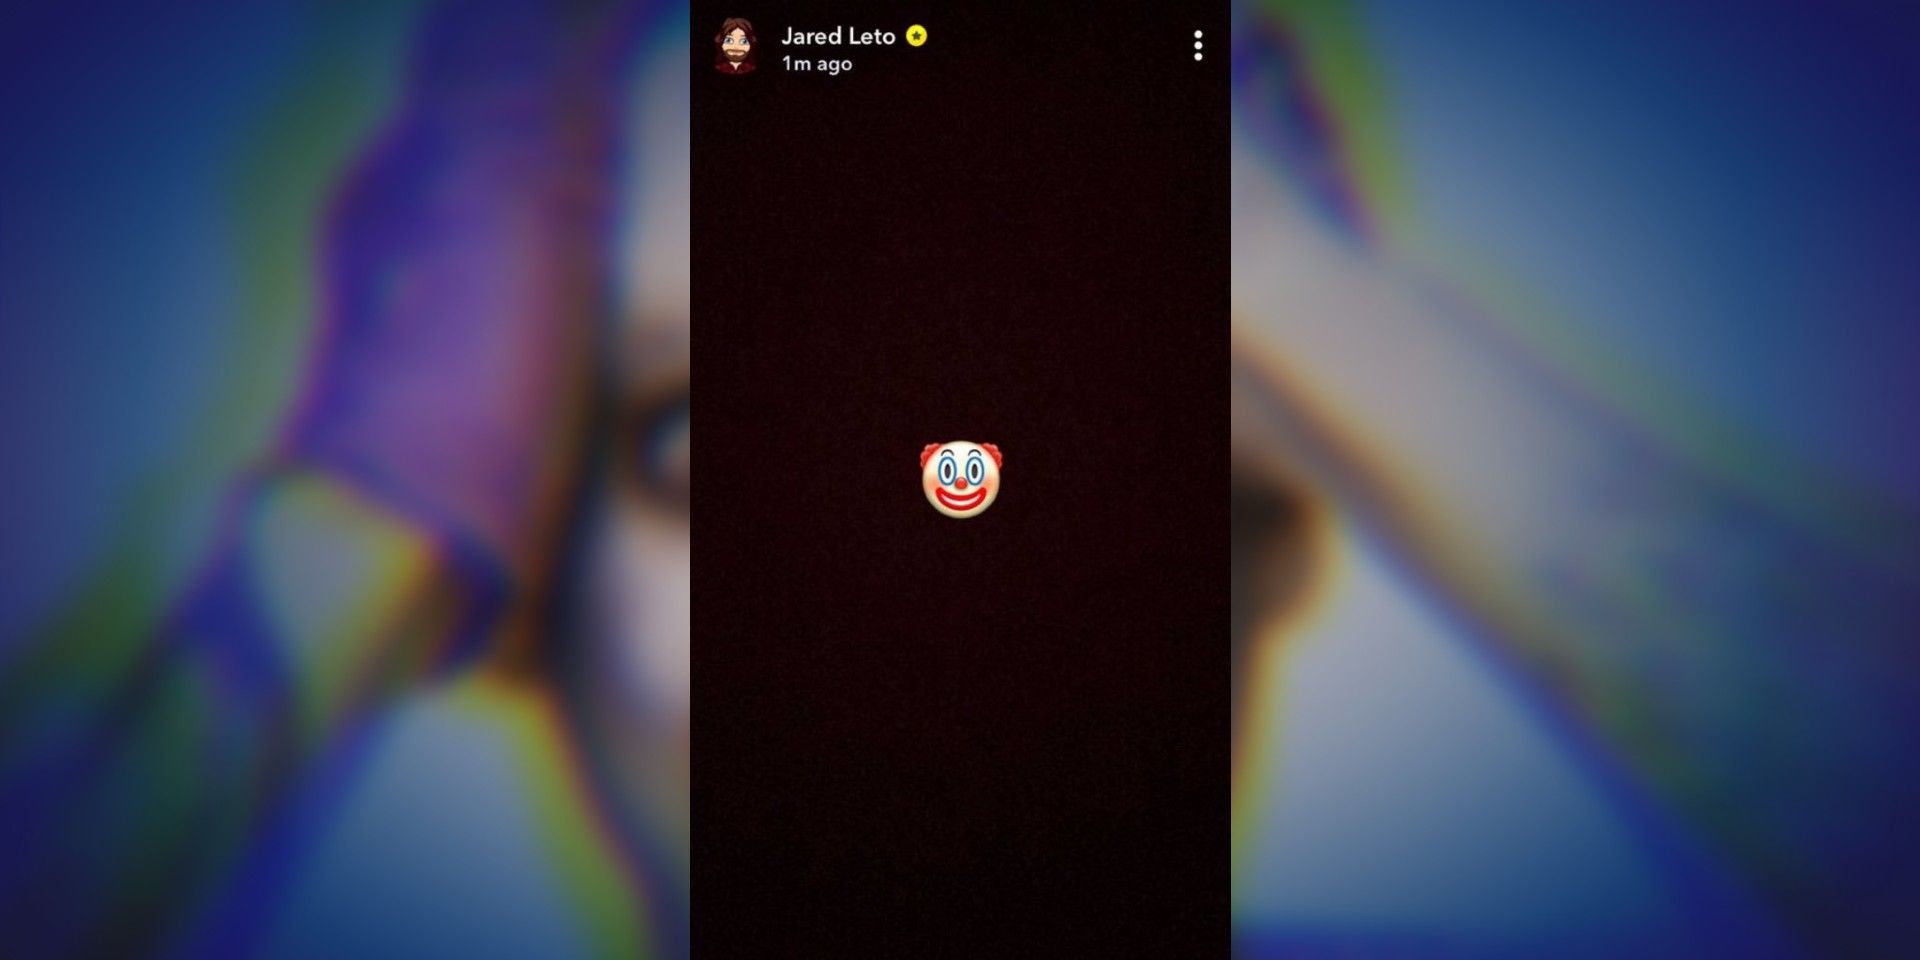 Jared Leto Birds of Prey Joker Tease Snapchat